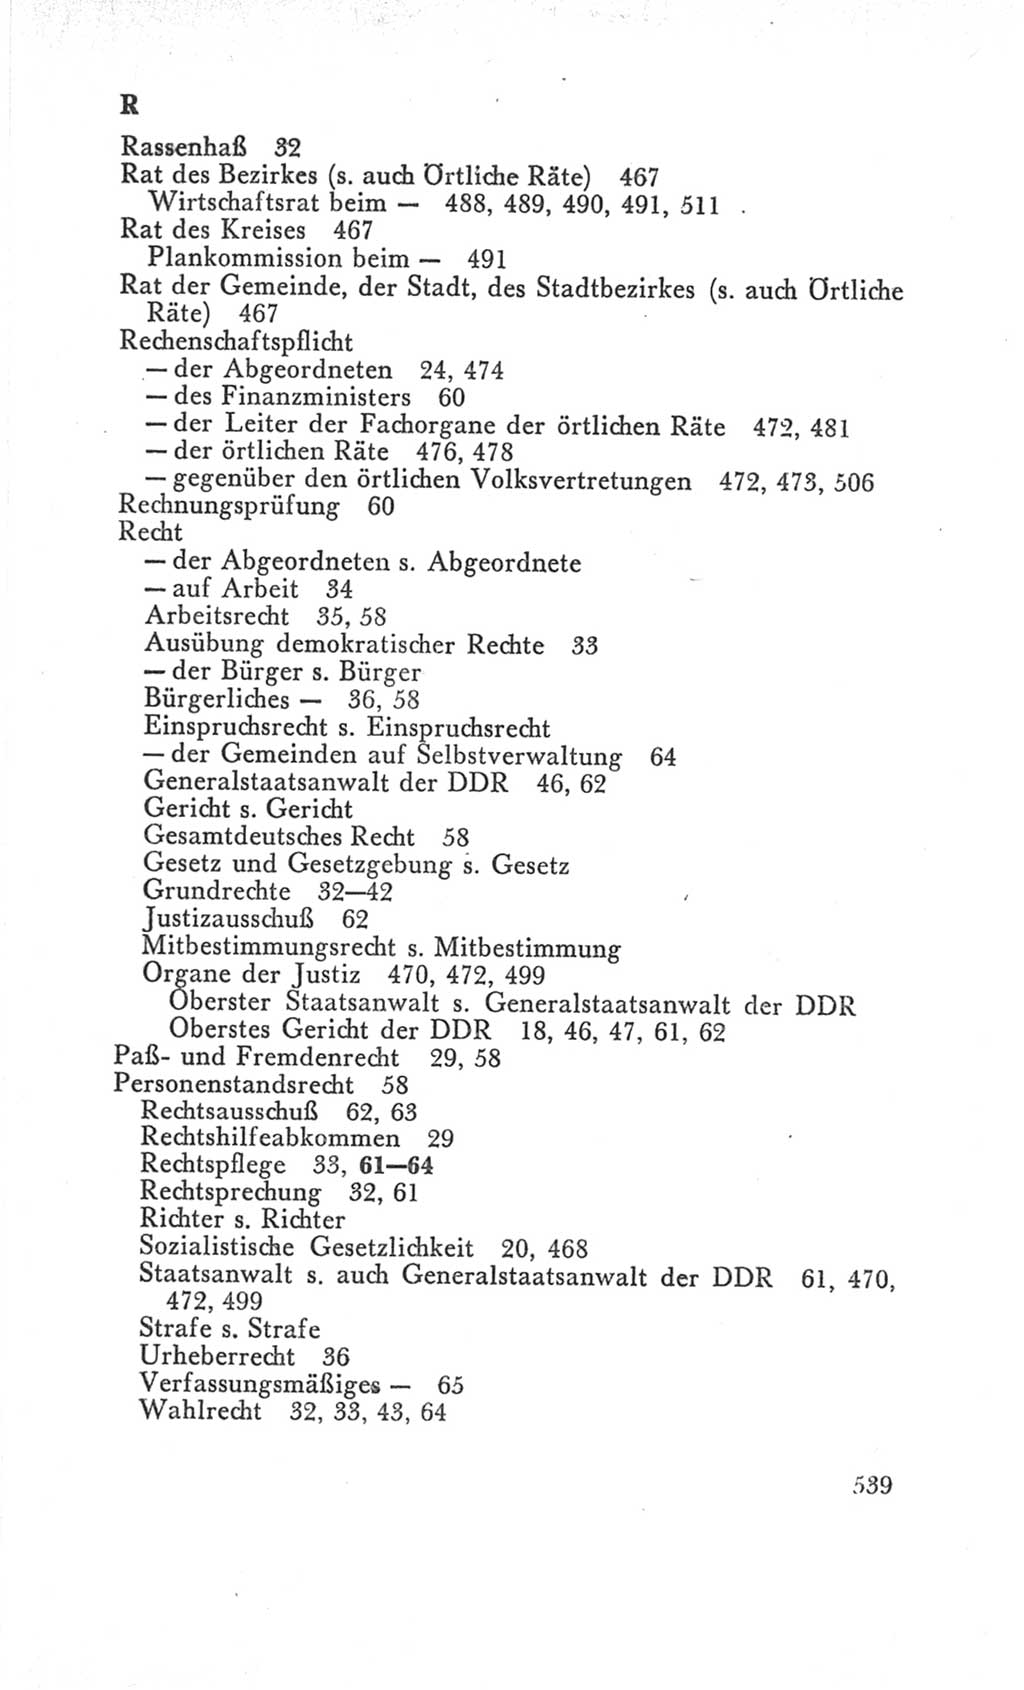 Handbuch der Volkskammer (VK) der Deutschen Demokratischen Republik (DDR), 3. Wahlperiode 1958-1963, Seite 539 (Hdb. VK. DDR 3. WP. 1958-1963, S. 539)